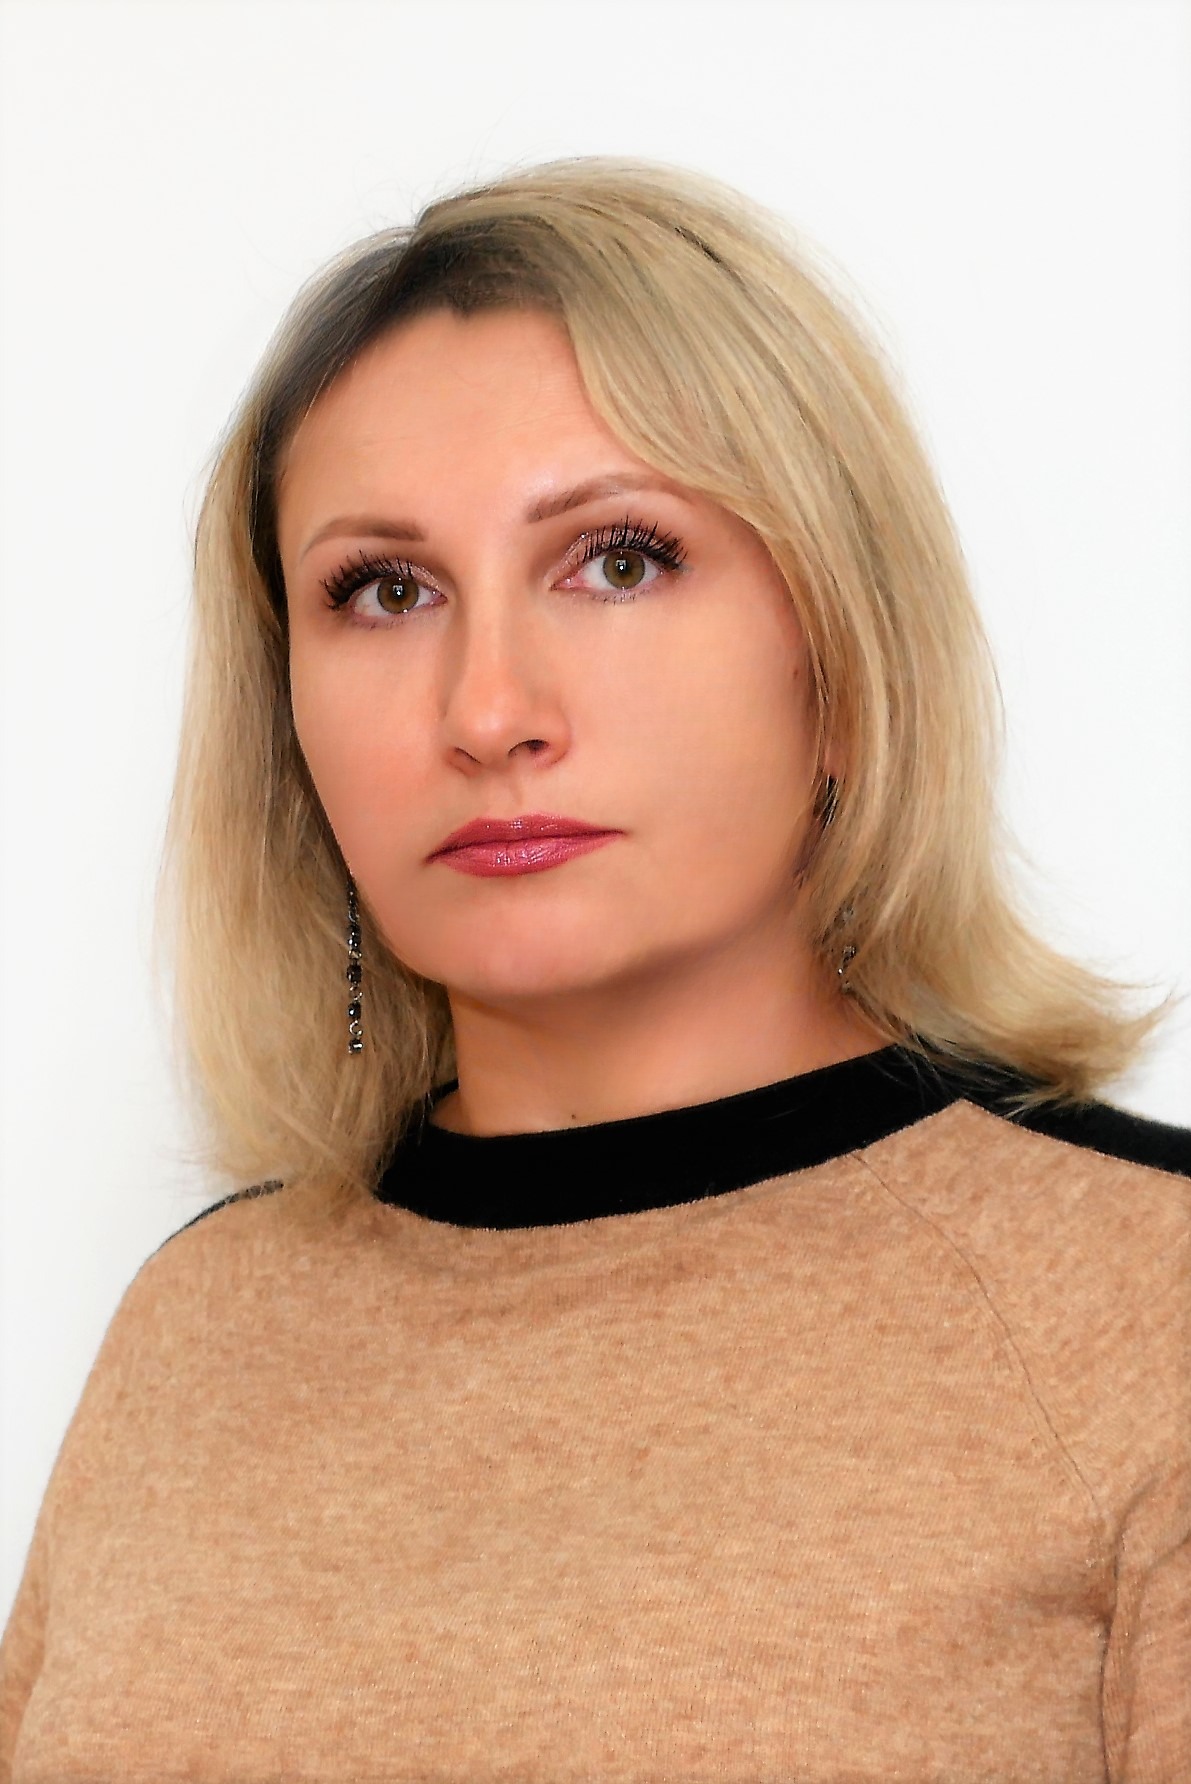 Барулина Дина Александровна.